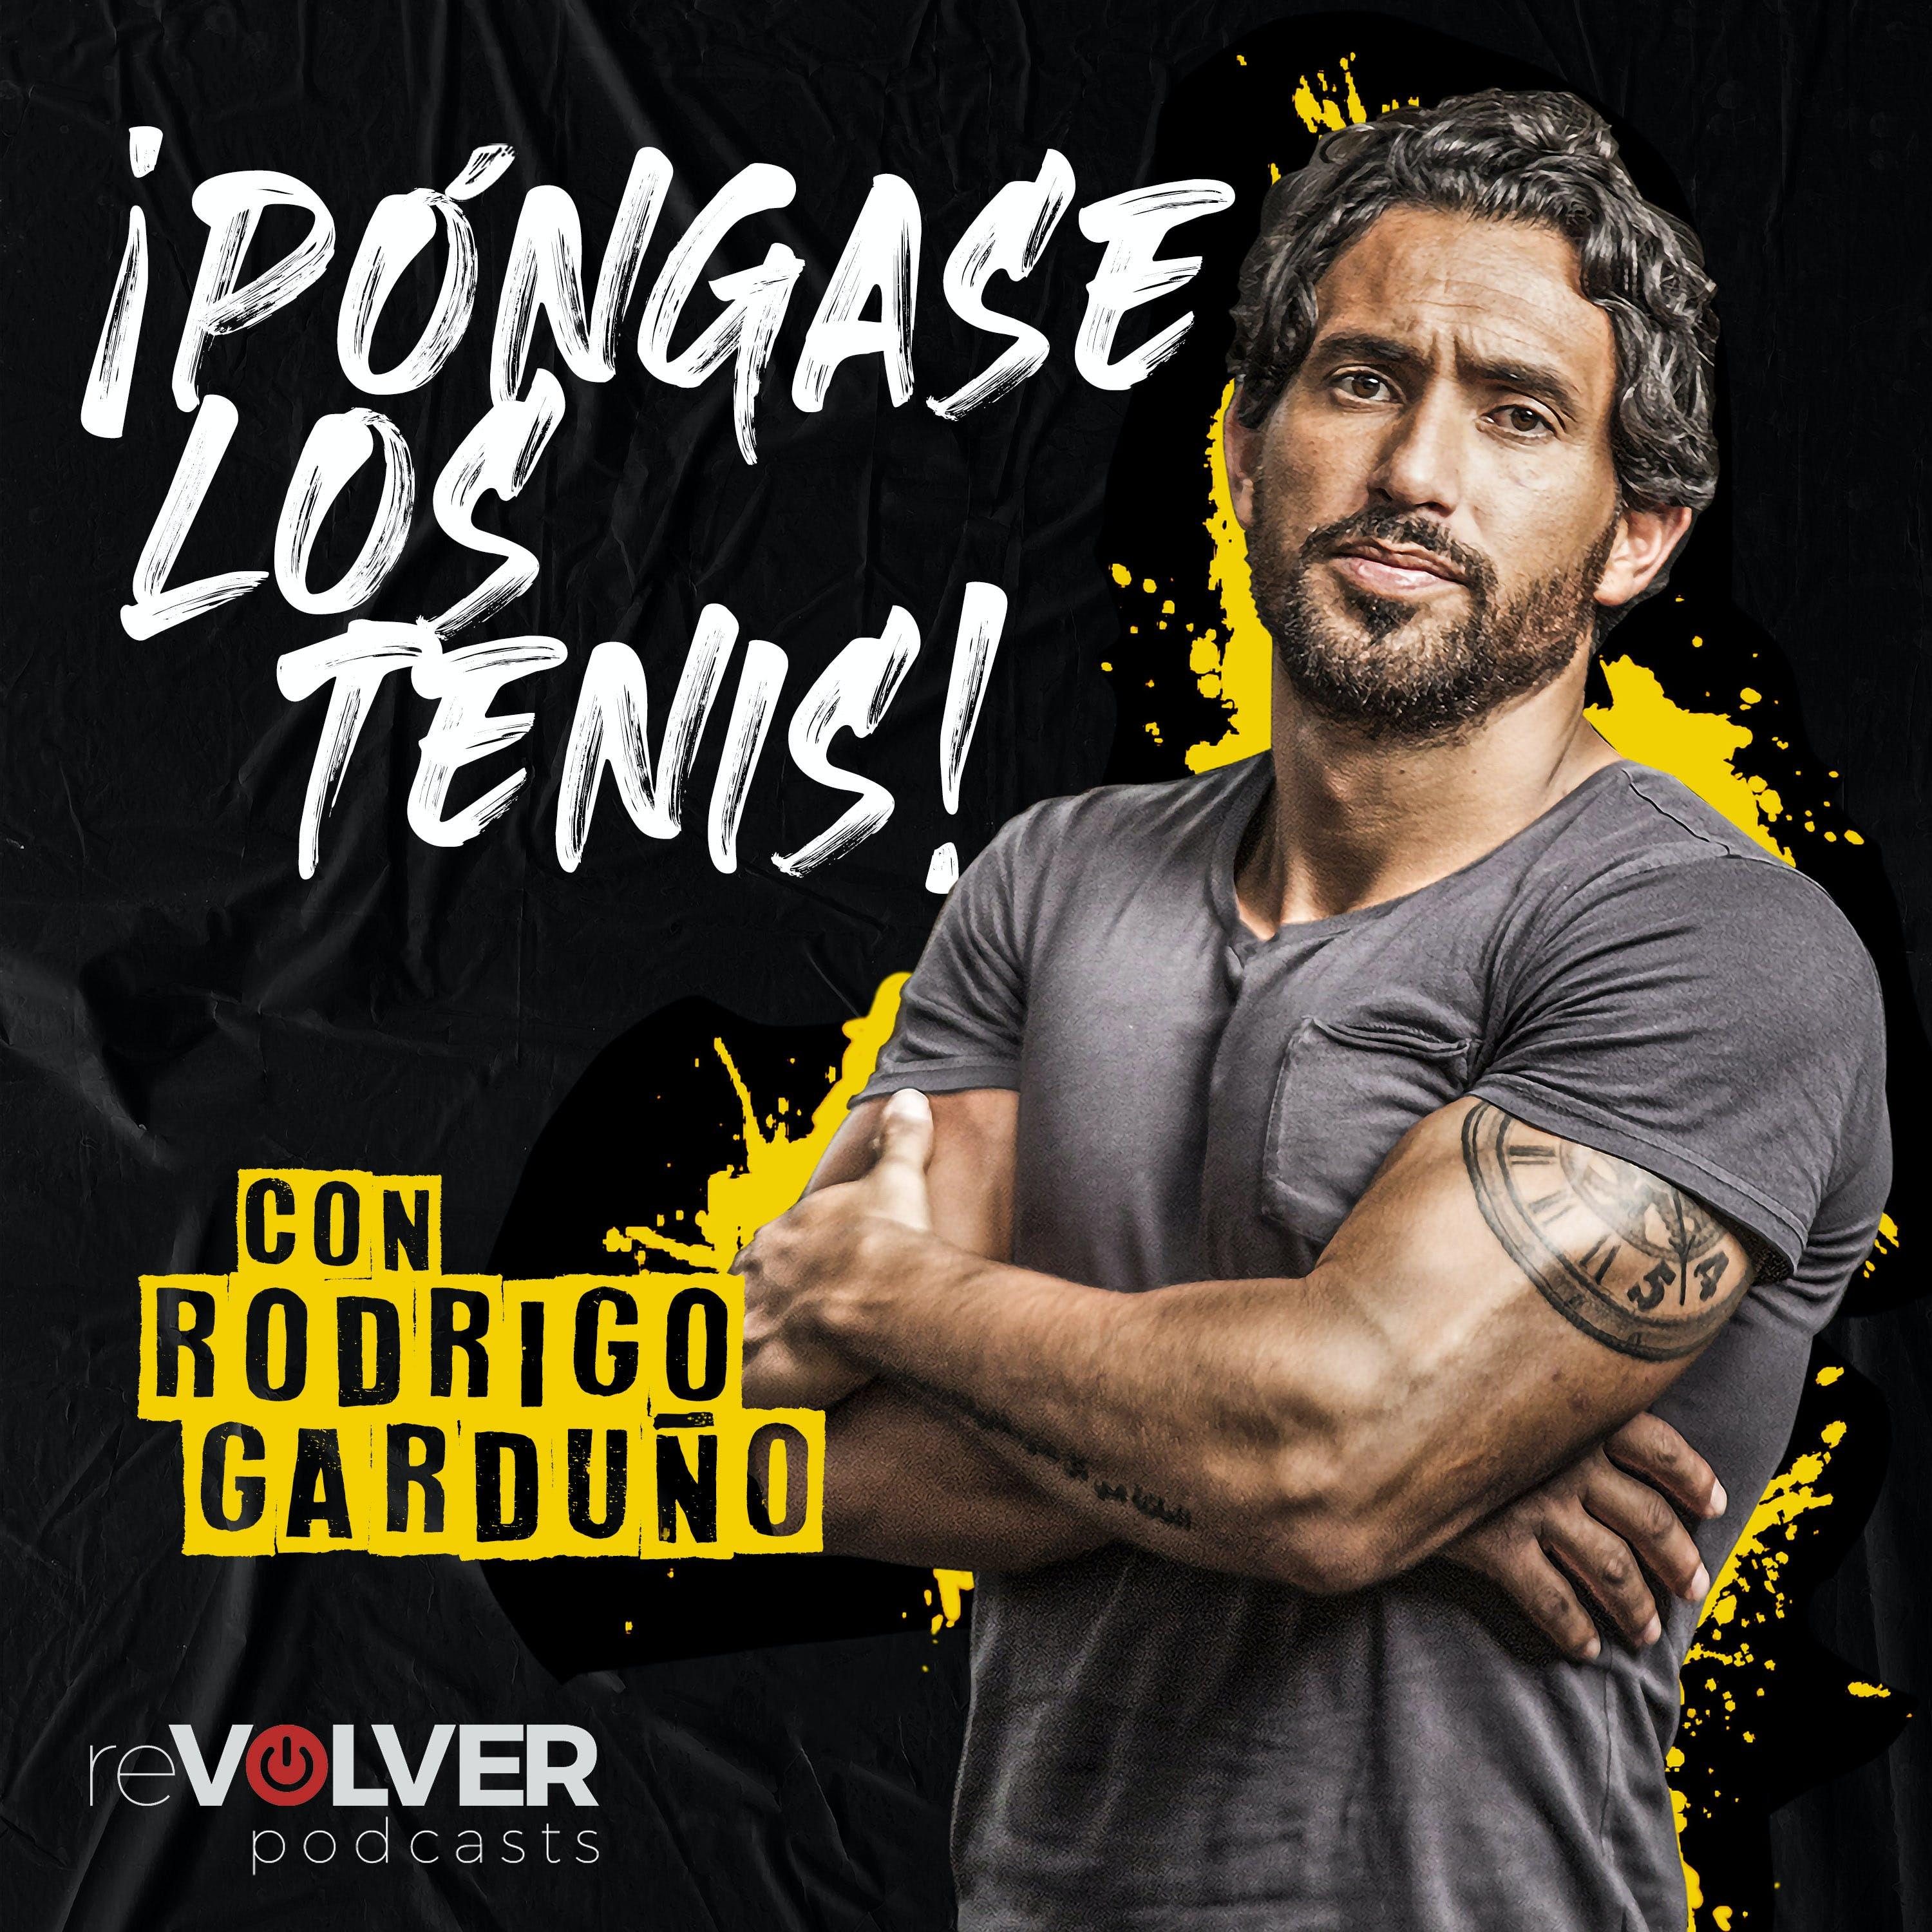 Show poster of Póngase Los Tenis con Rodrigo Garduño